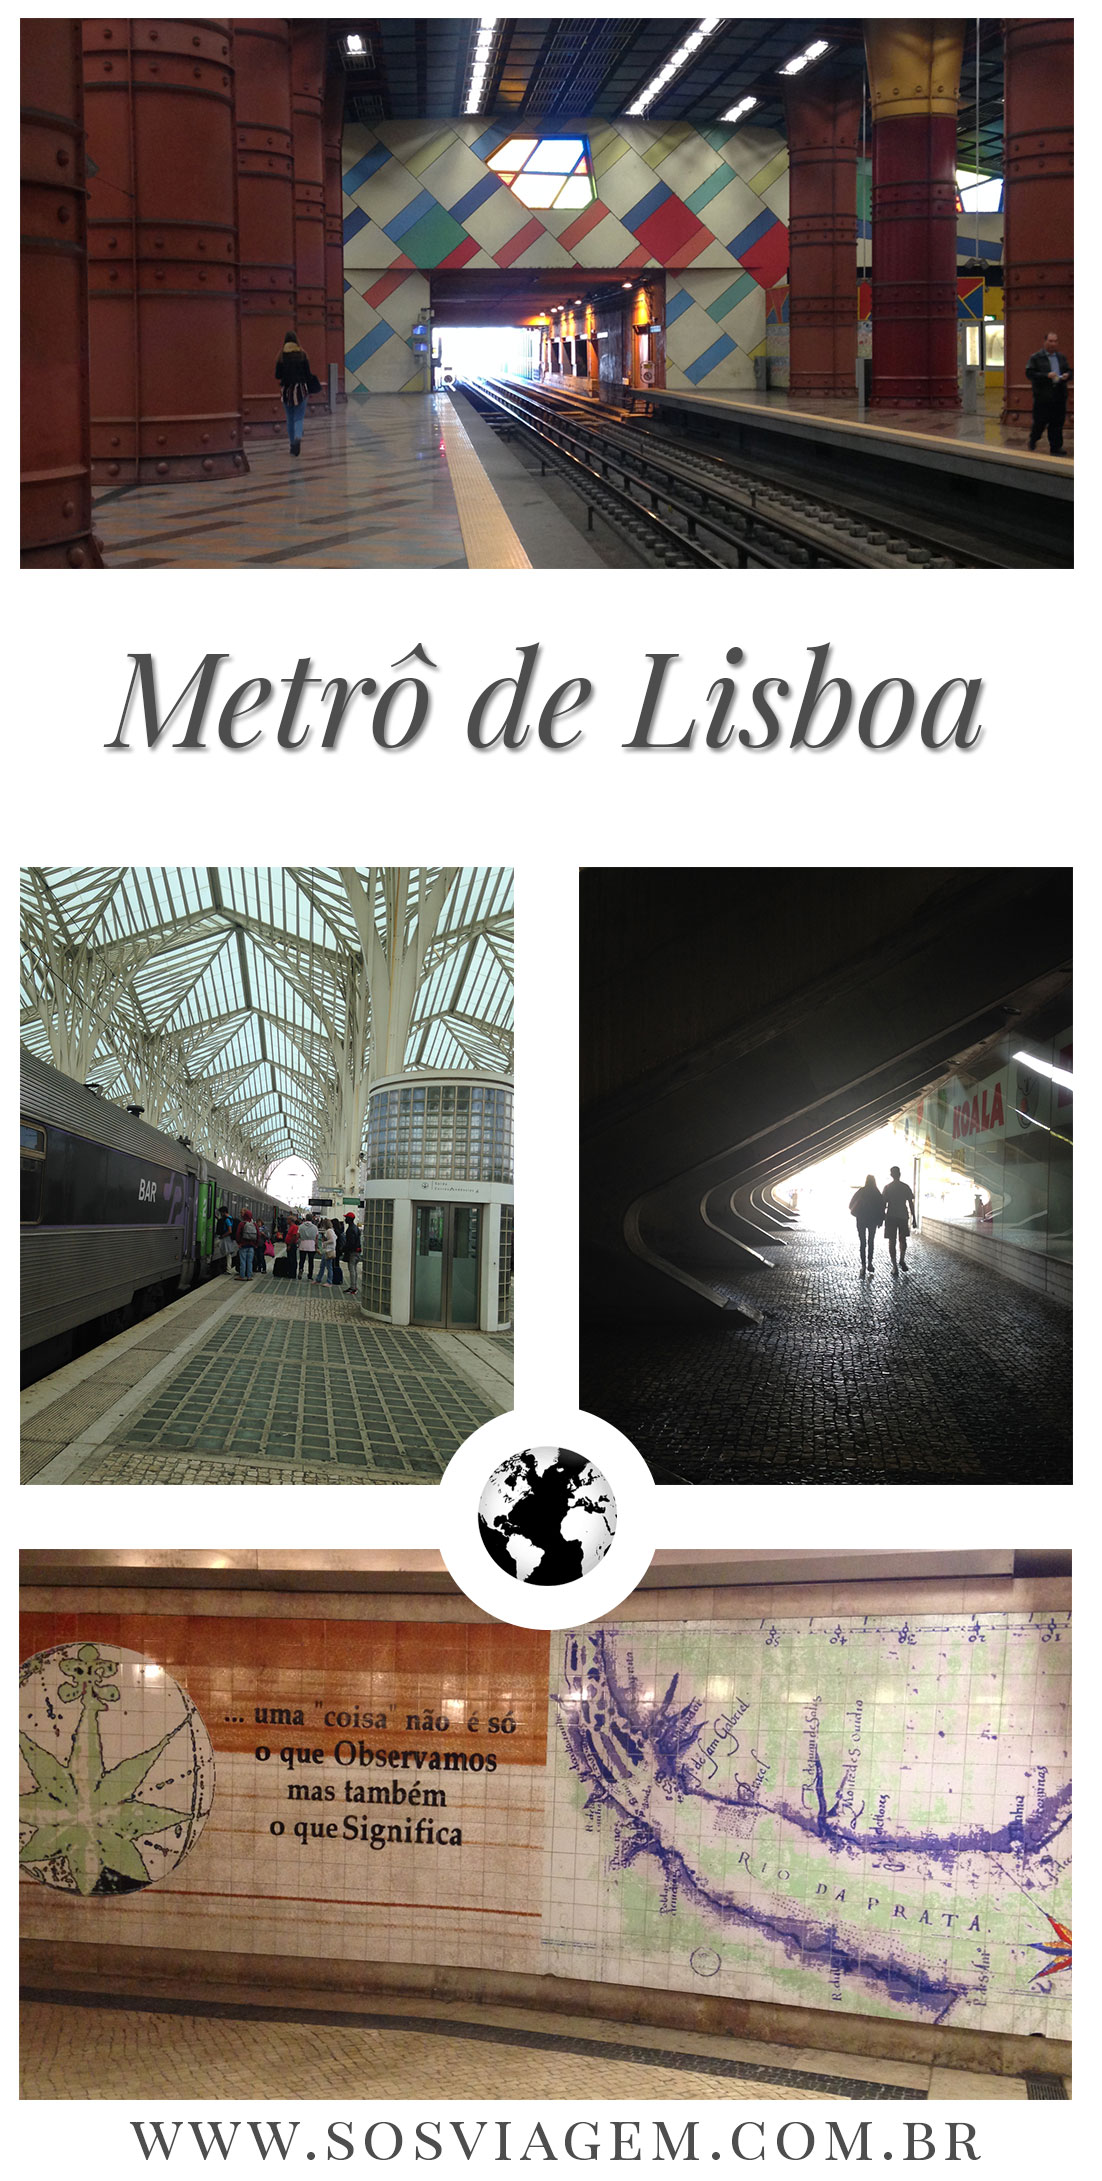 Metrô de Lisboa.